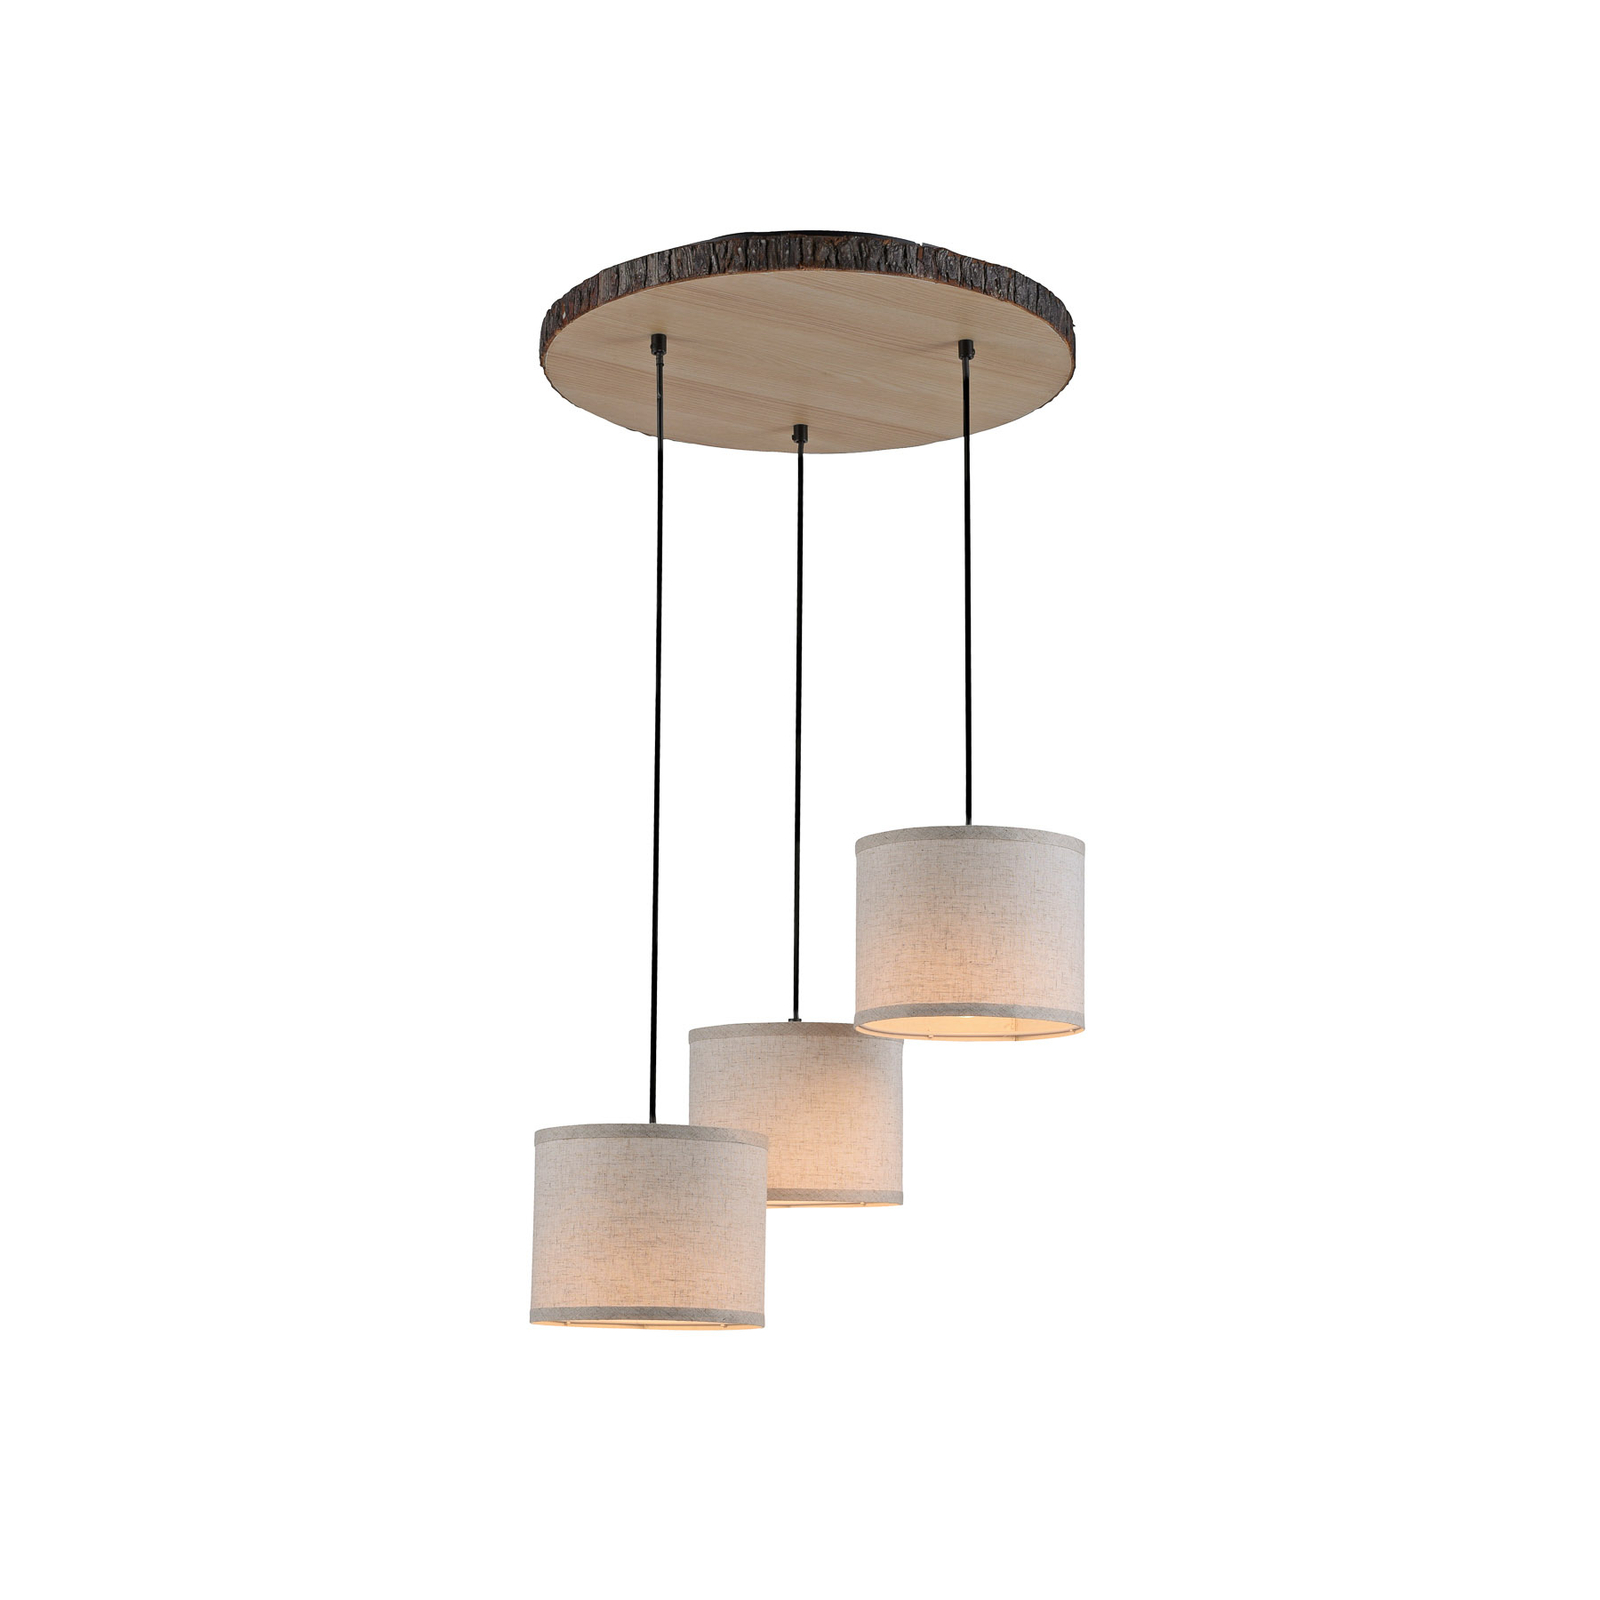 Bark hanglamp, 3-lamps, rondel